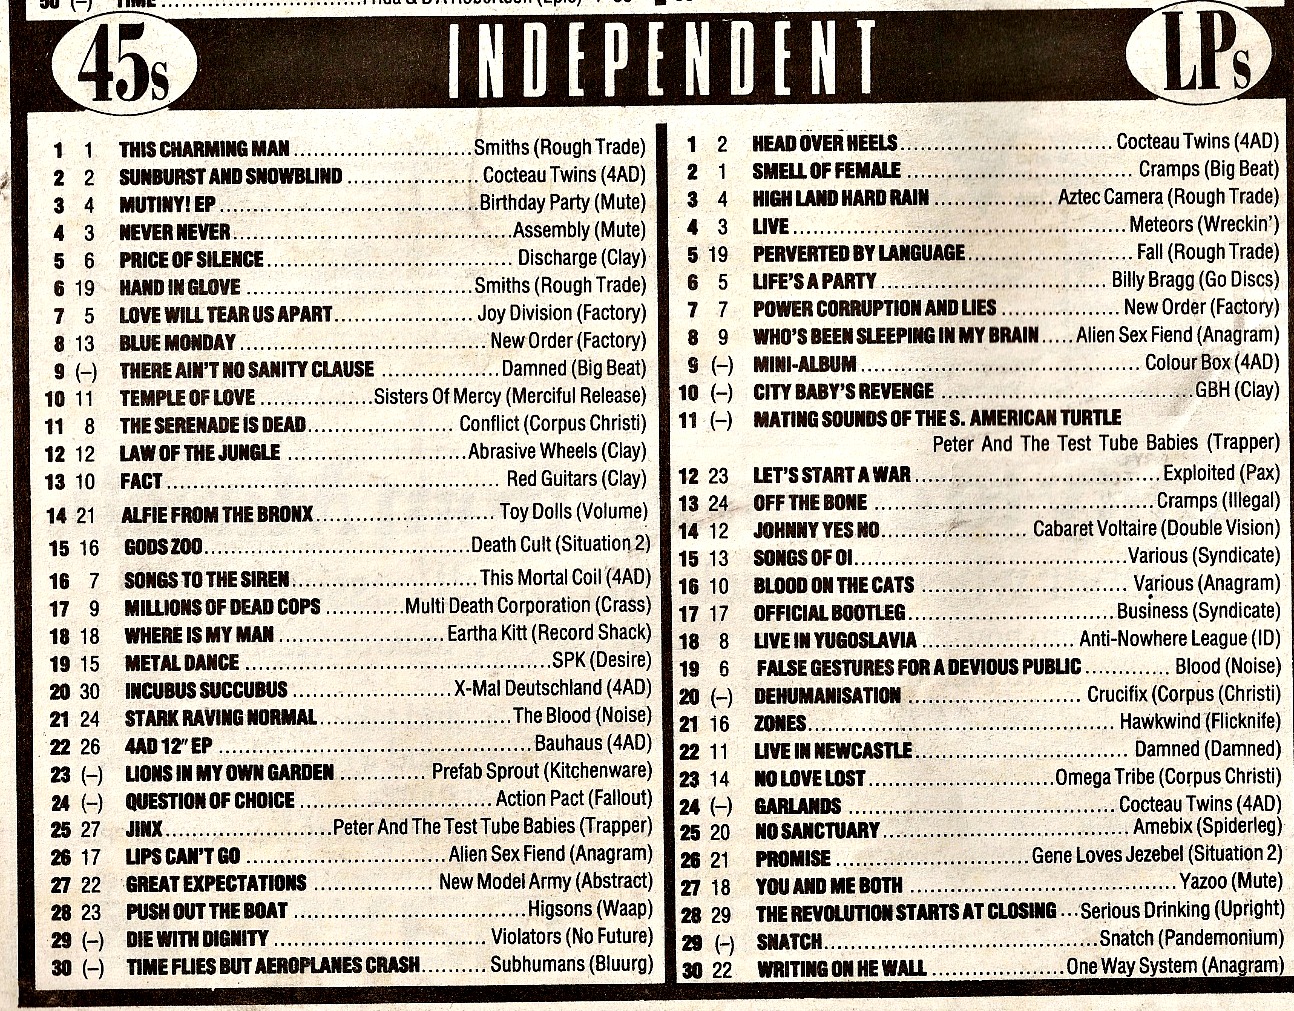 1983 Uk Charts